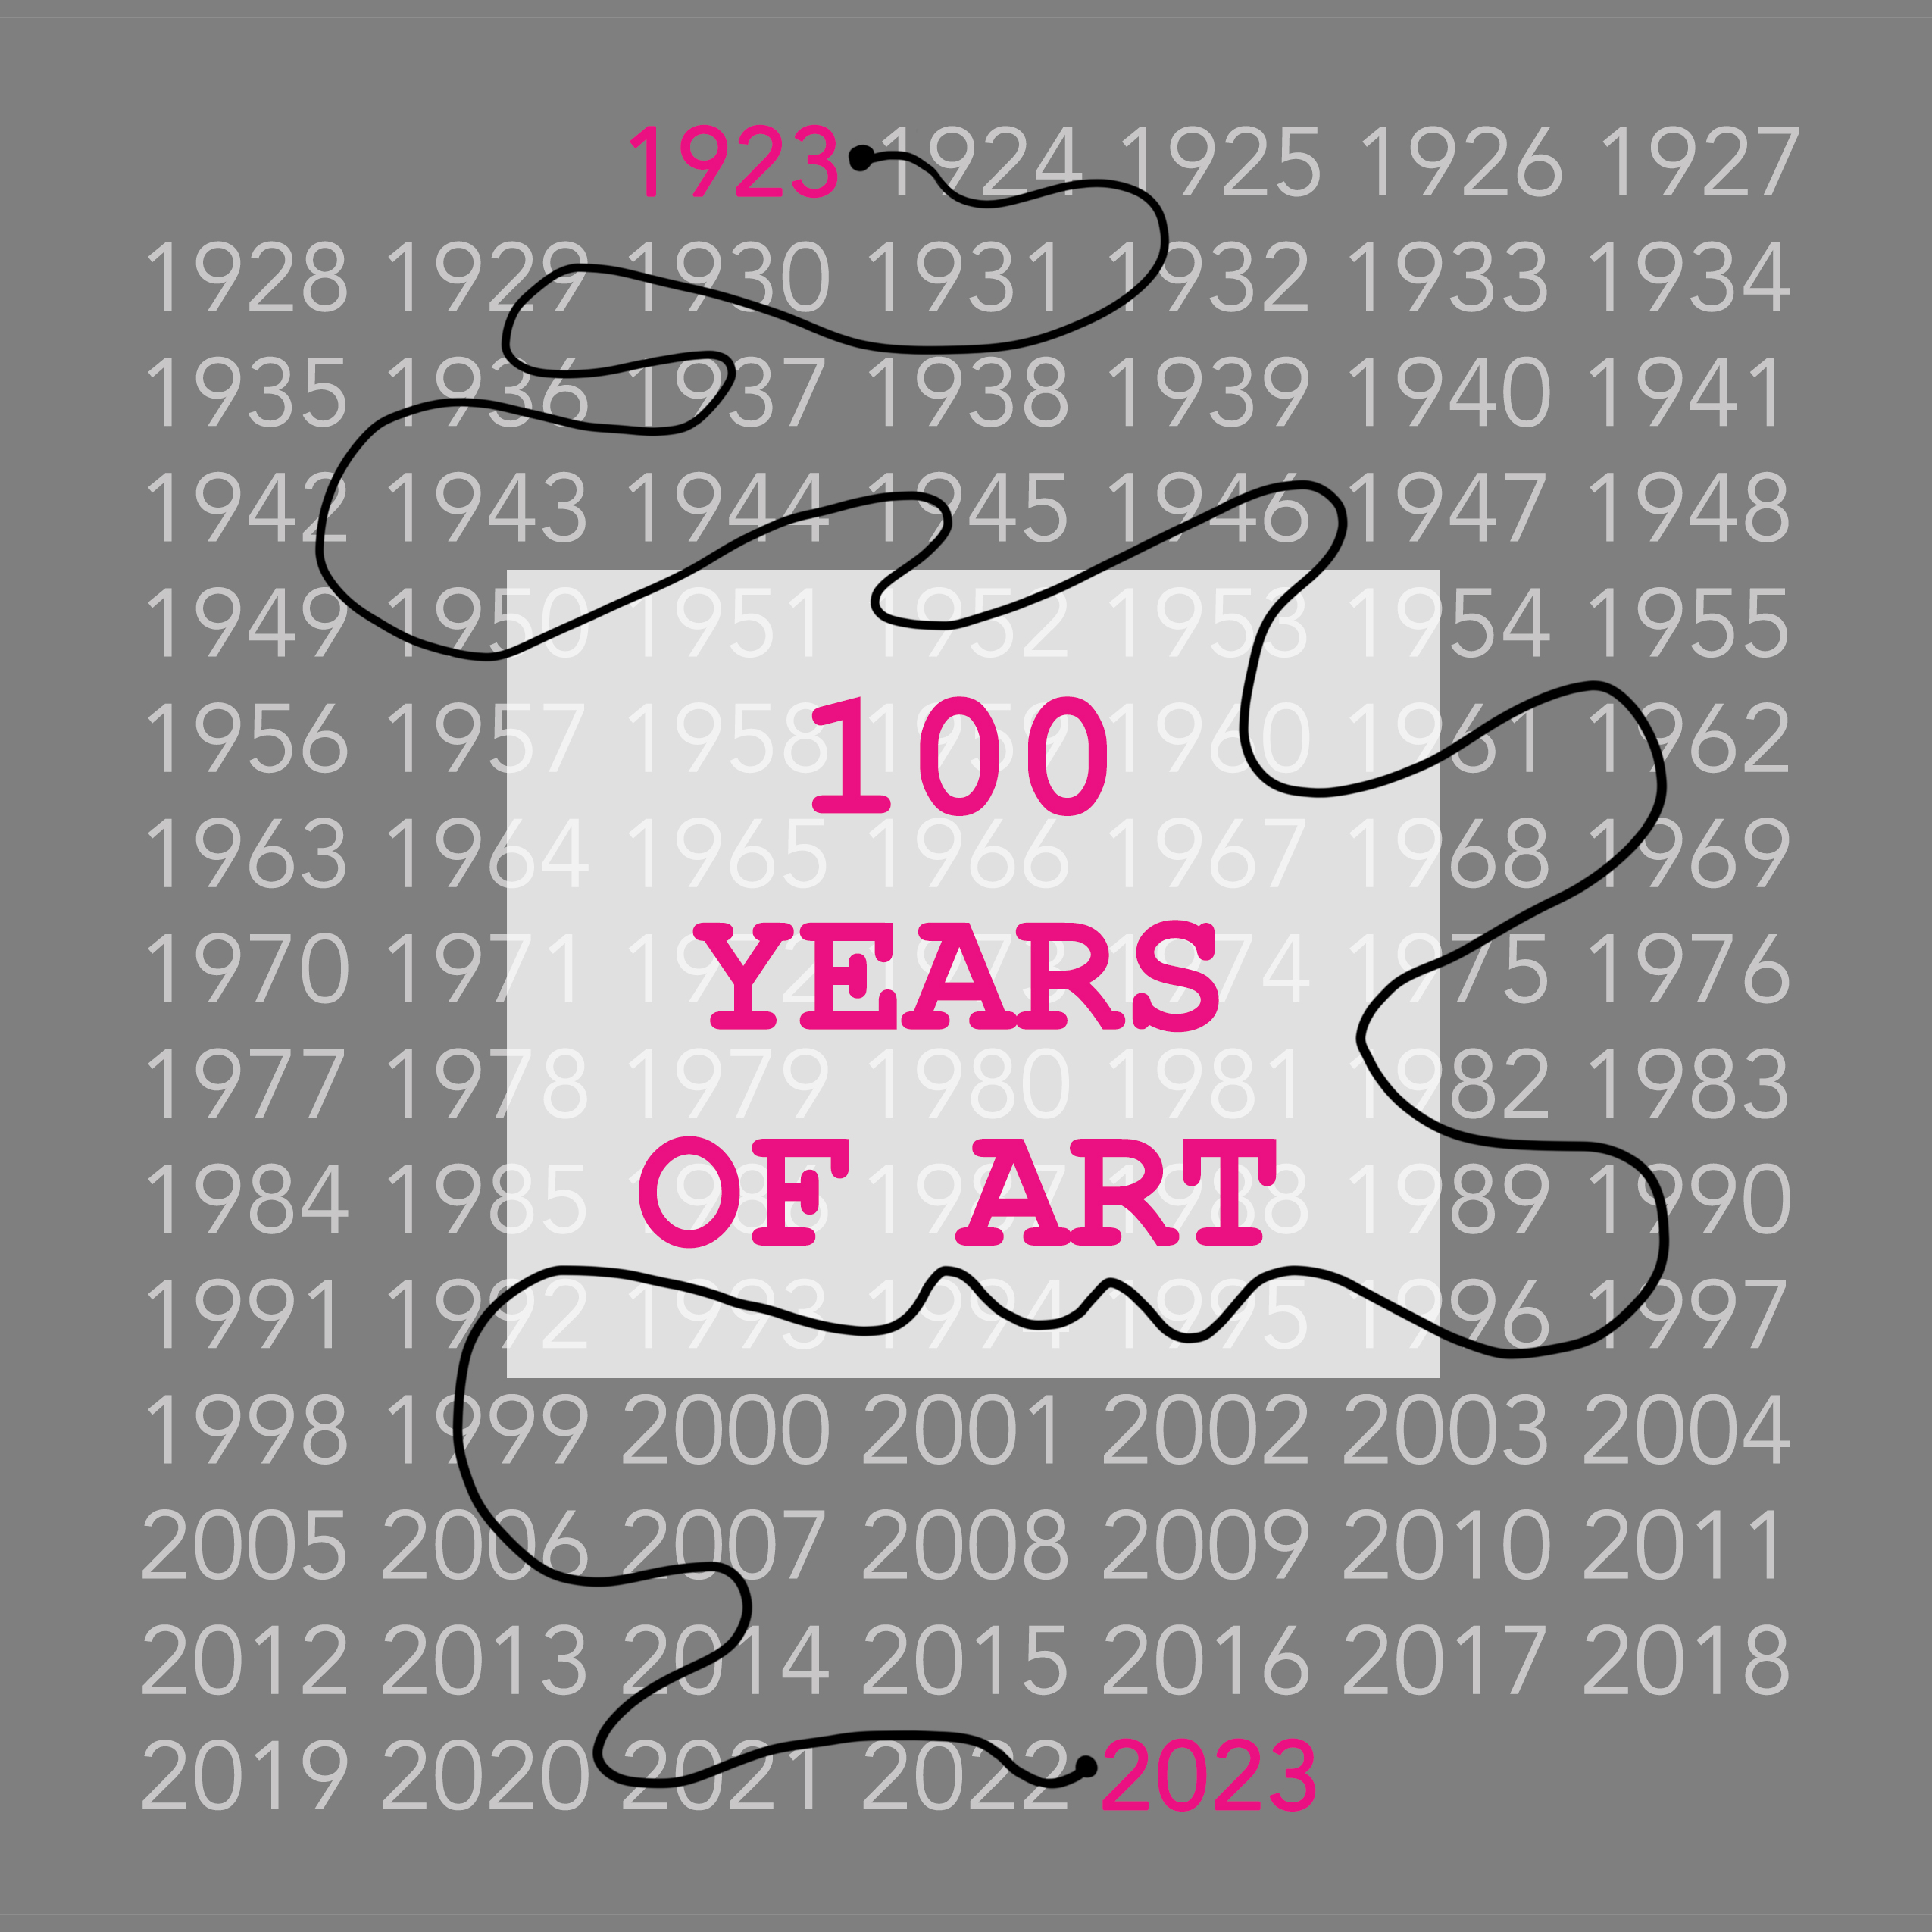 100 years of art